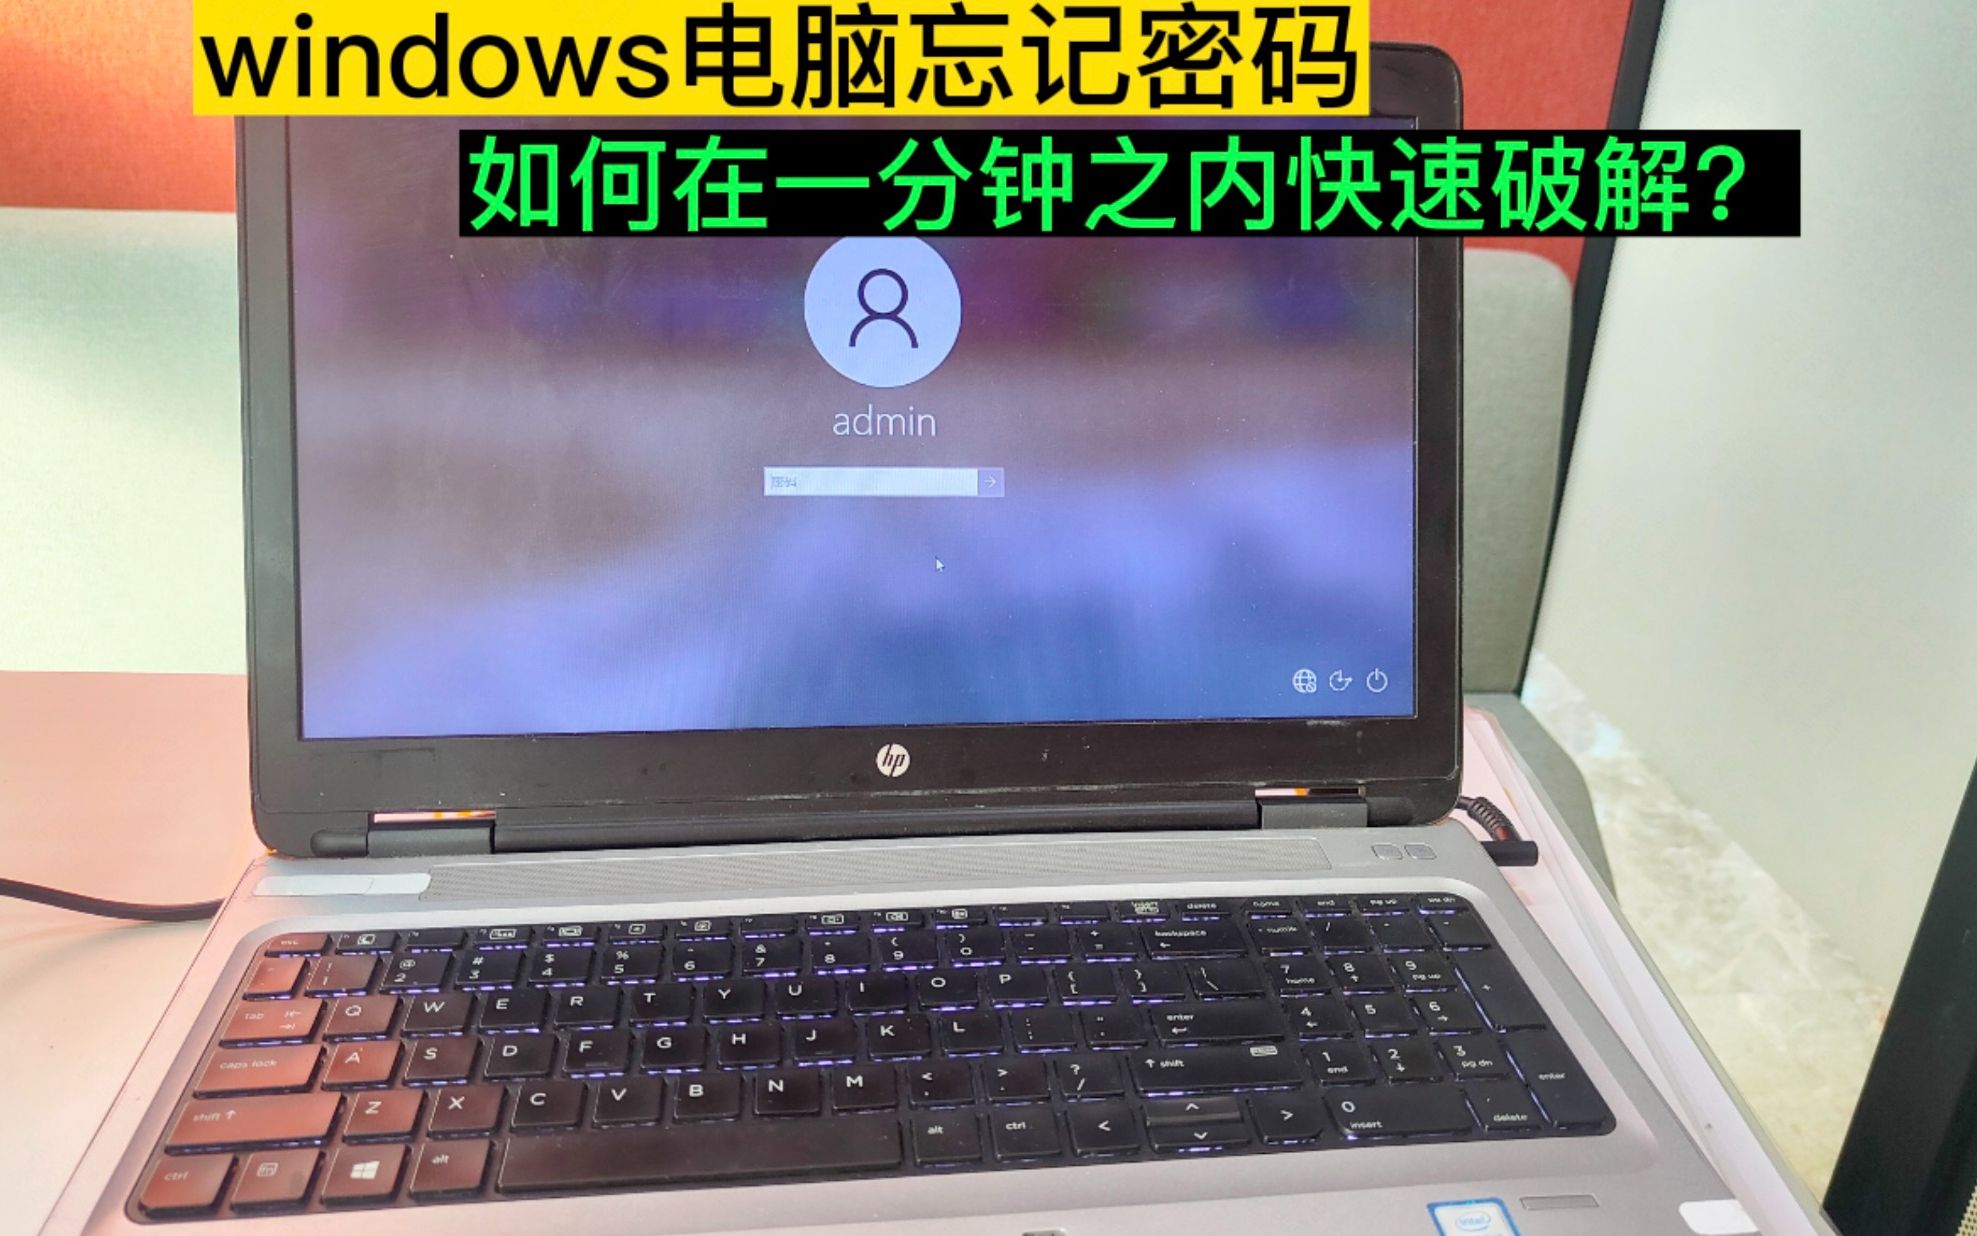 Windows电脑忘记密码，如何在一分钟之内快速破解？